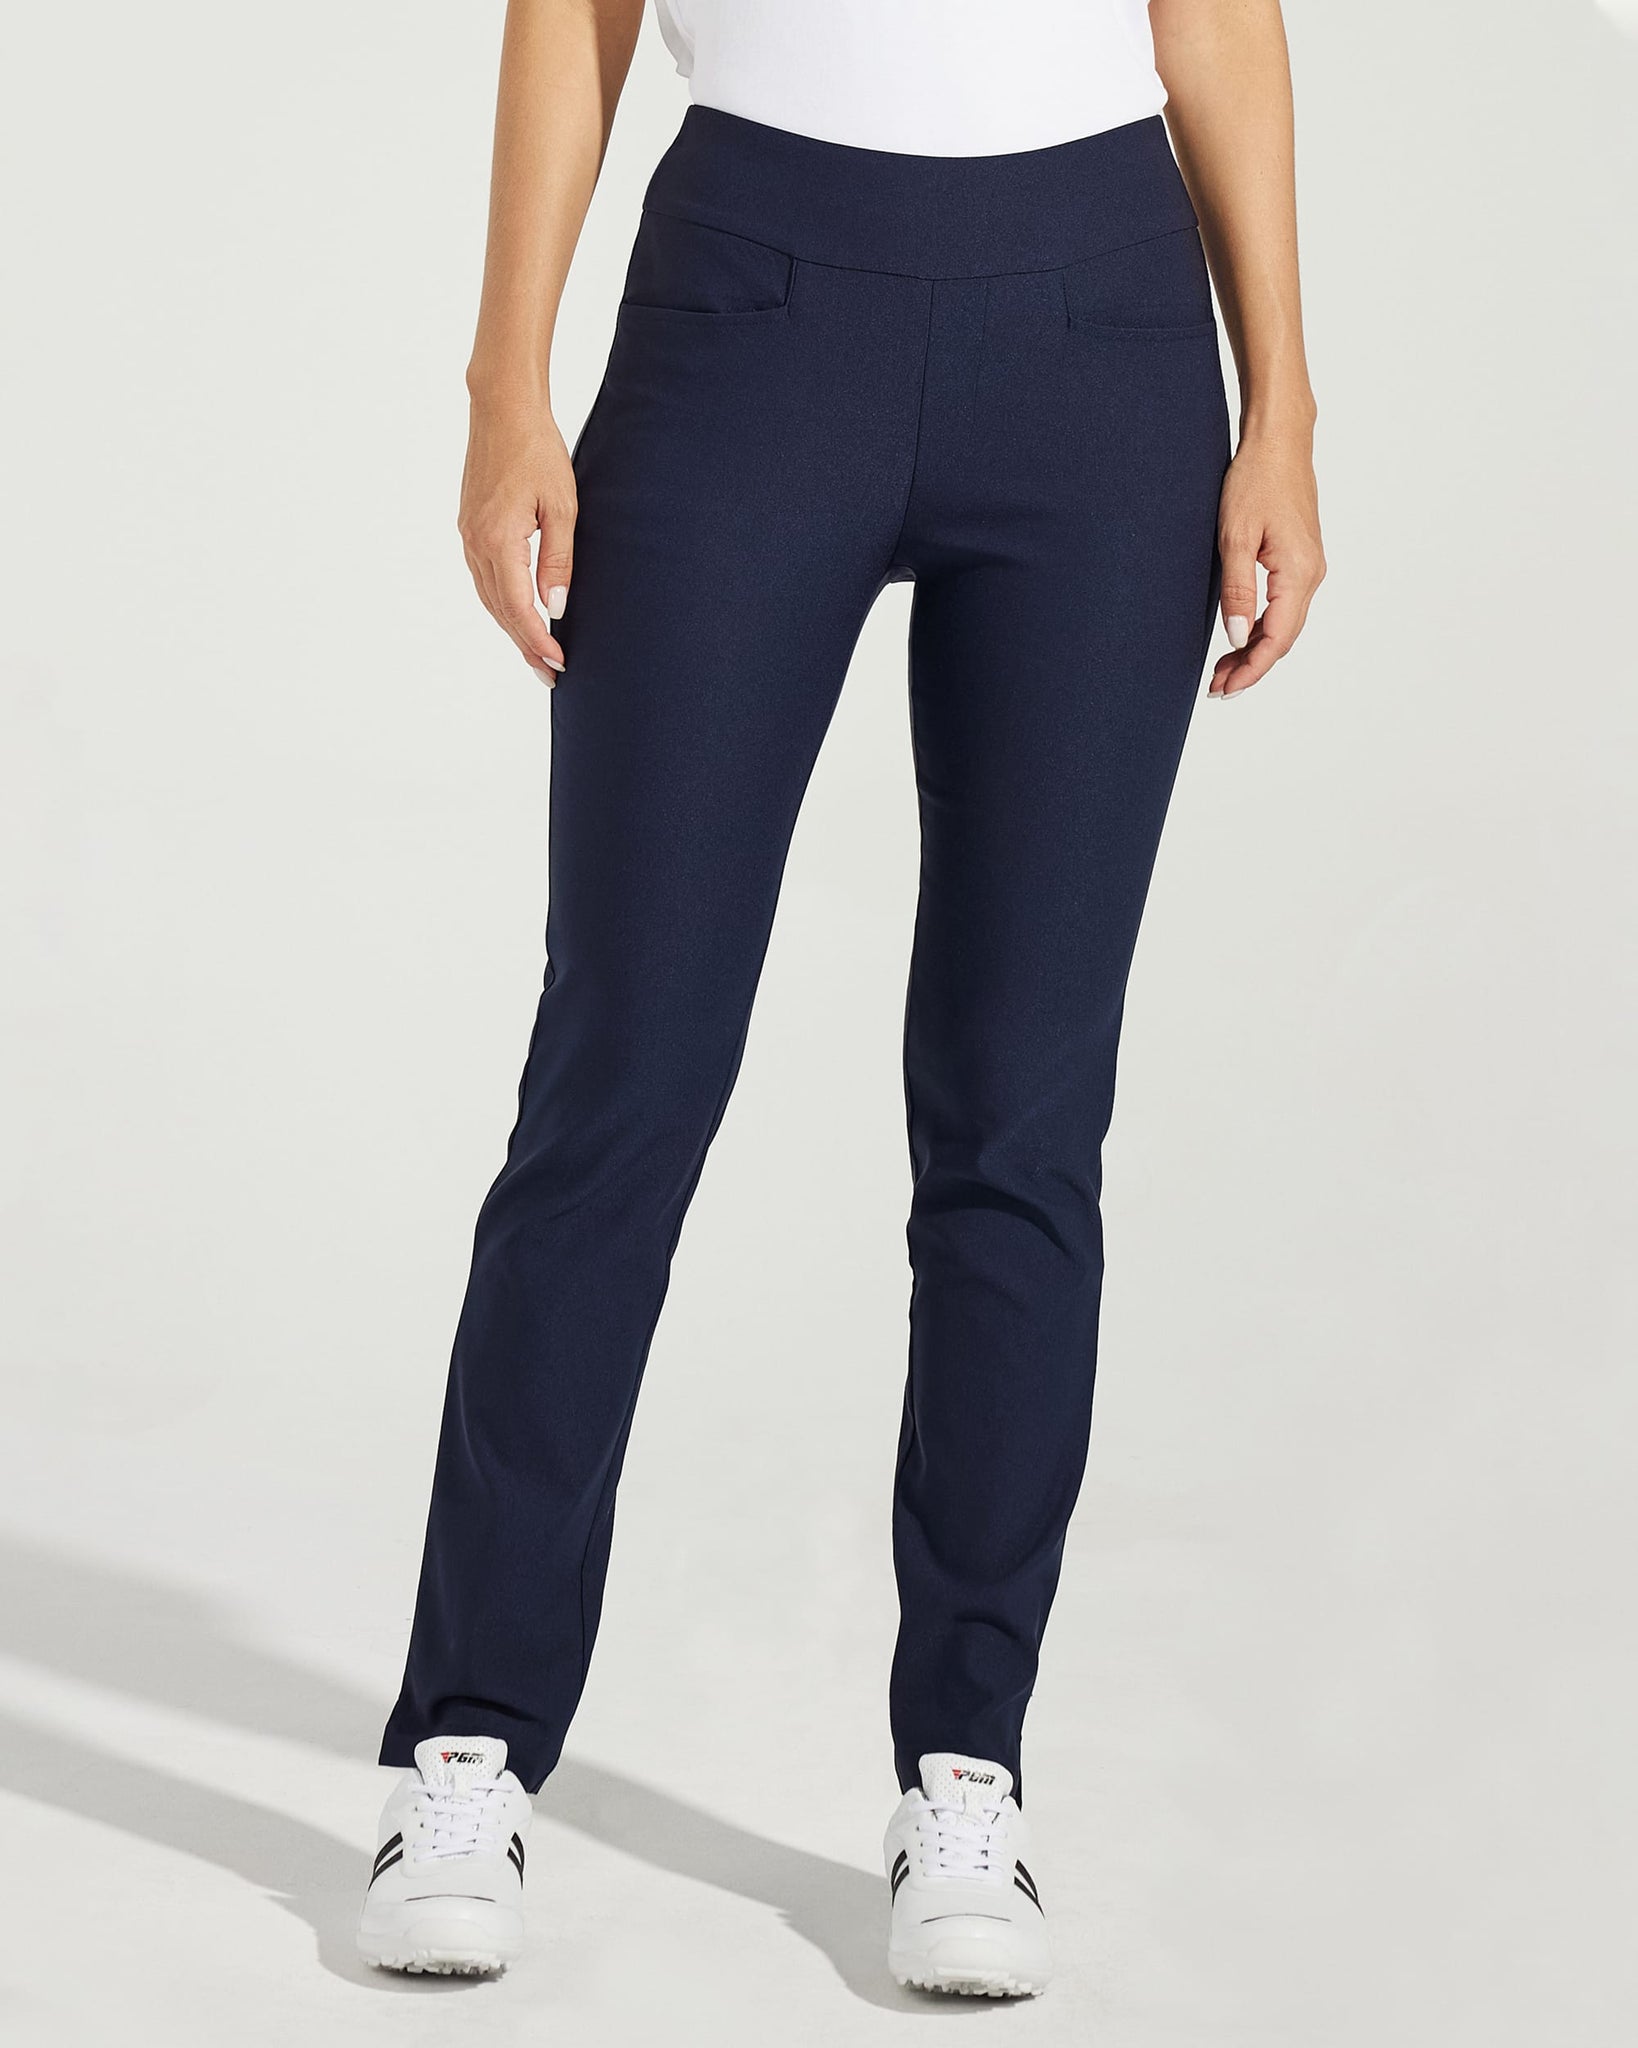 Women's Golf Pull-On Pants_Navy_model1